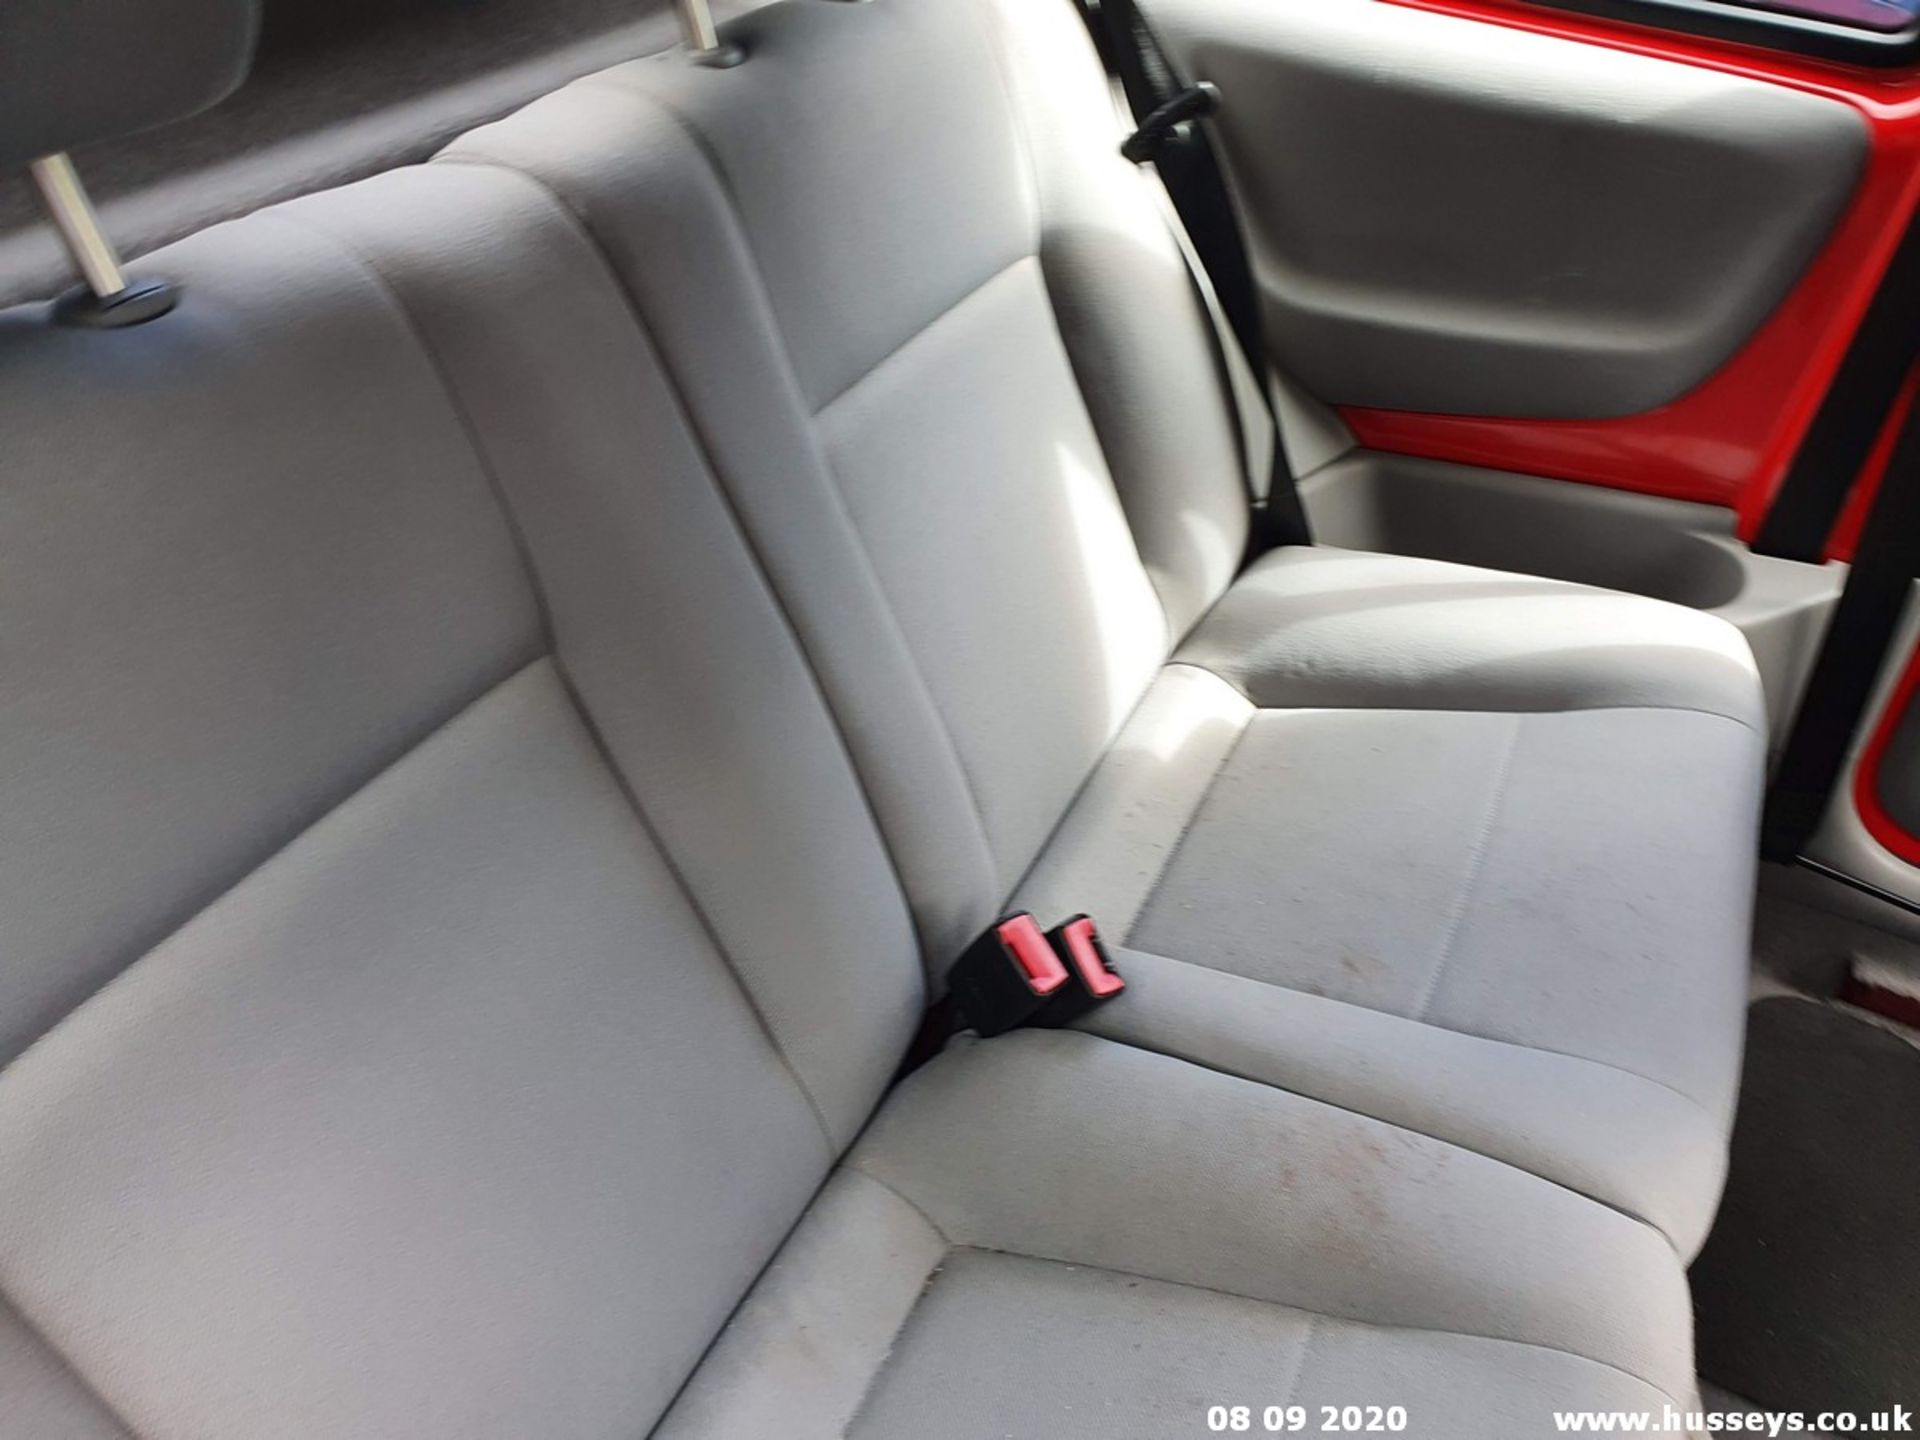 02/02 SEAT AROSA - 998cc 3dr Hatchback (Red, 48k) - Image 8 of 14